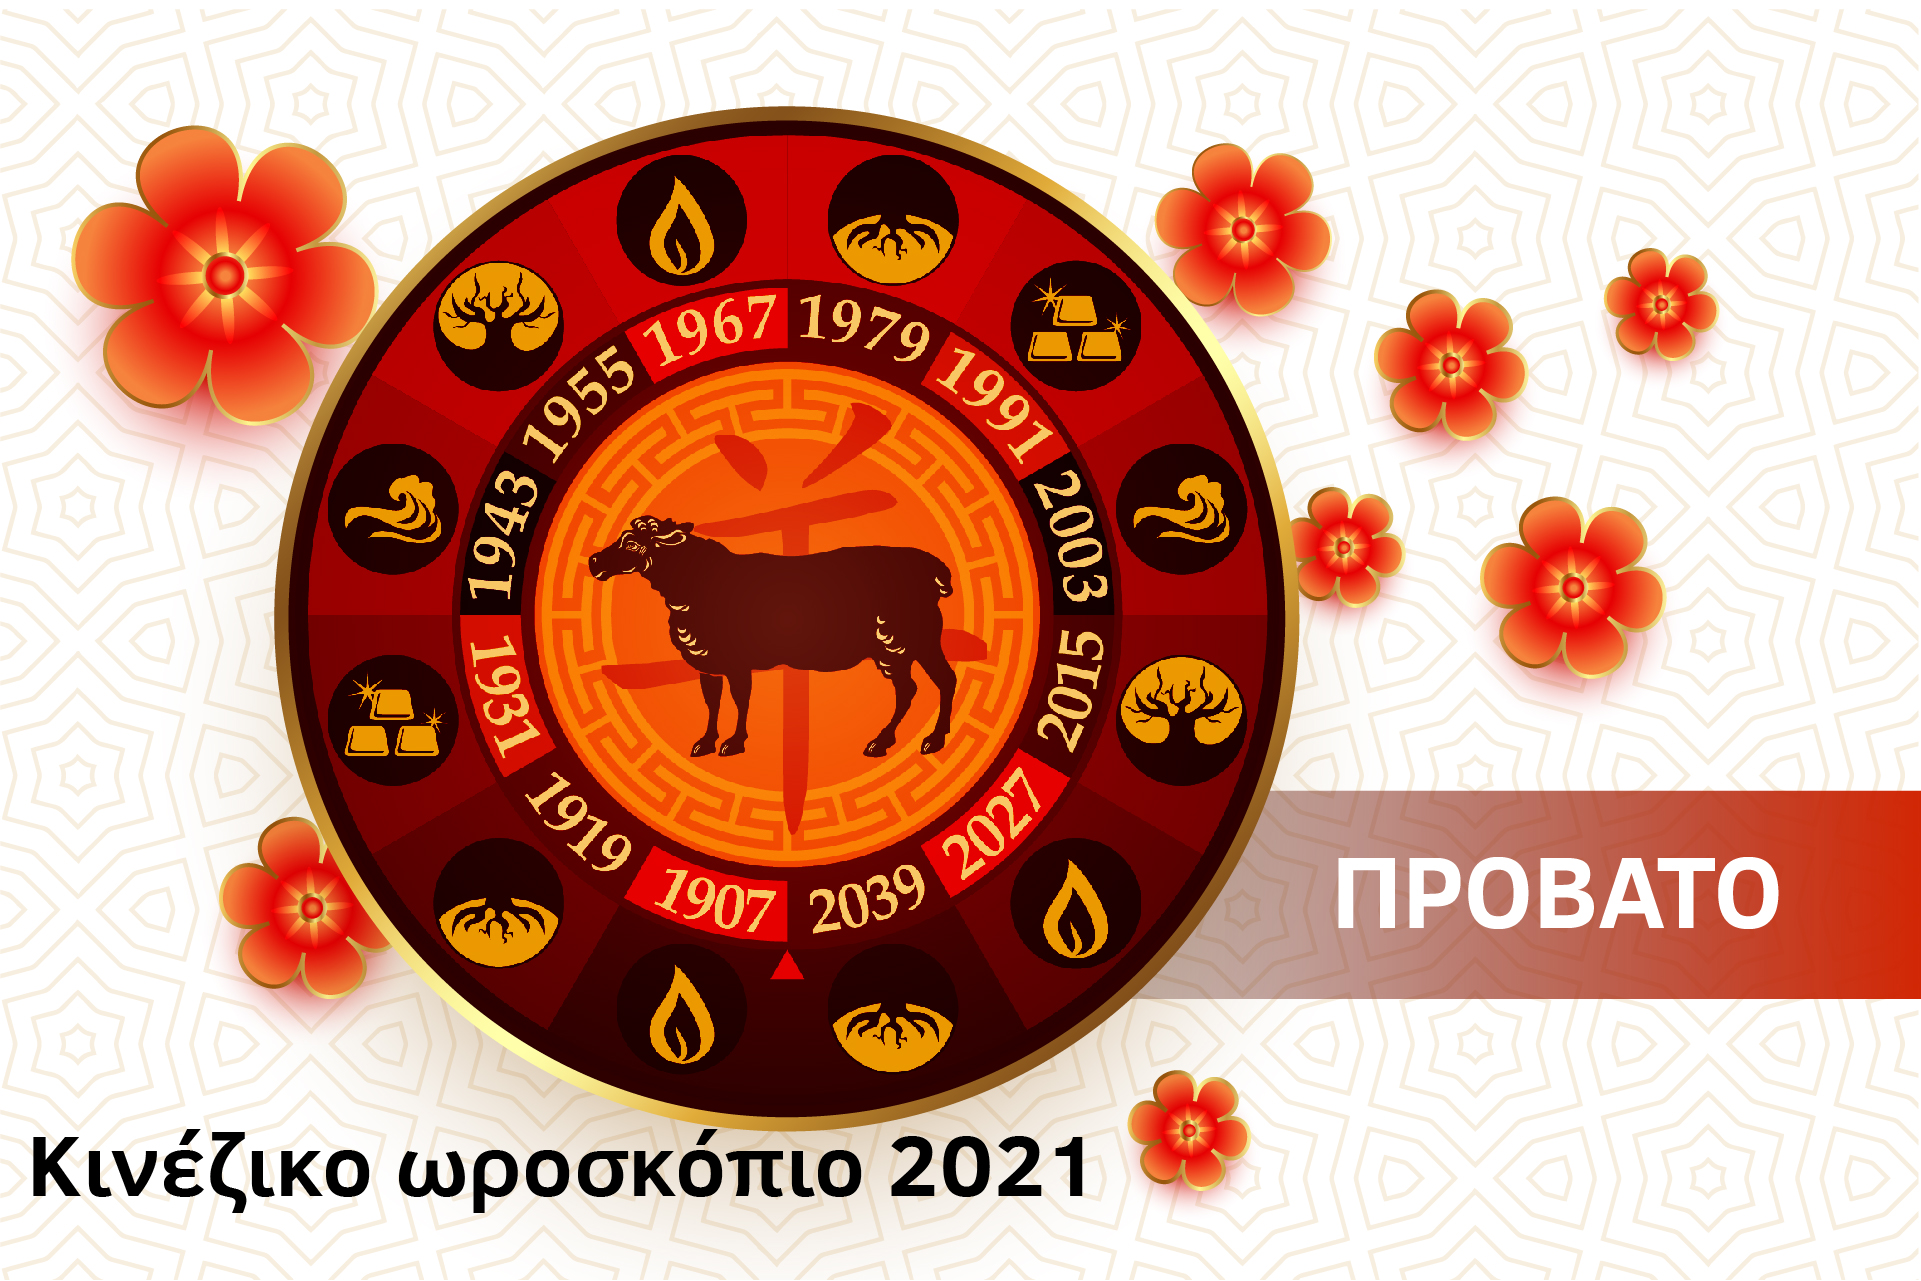 Πρόβατο 2021 – Κινέζικο Ωροσκόπιο